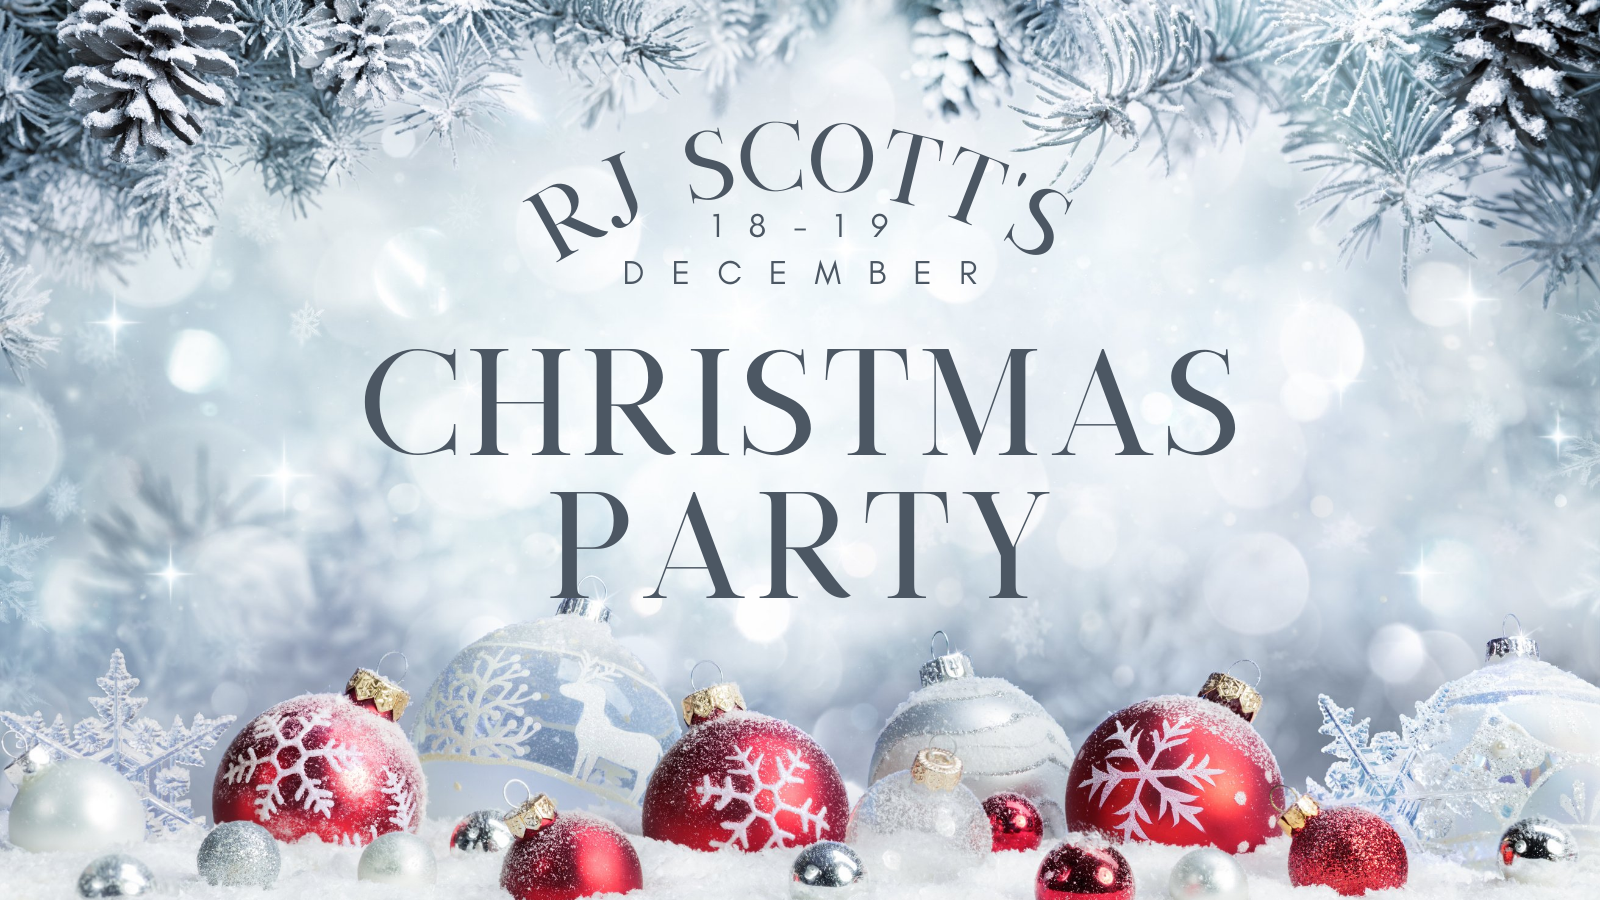 Christmas party RJ Scott MM Romance Author